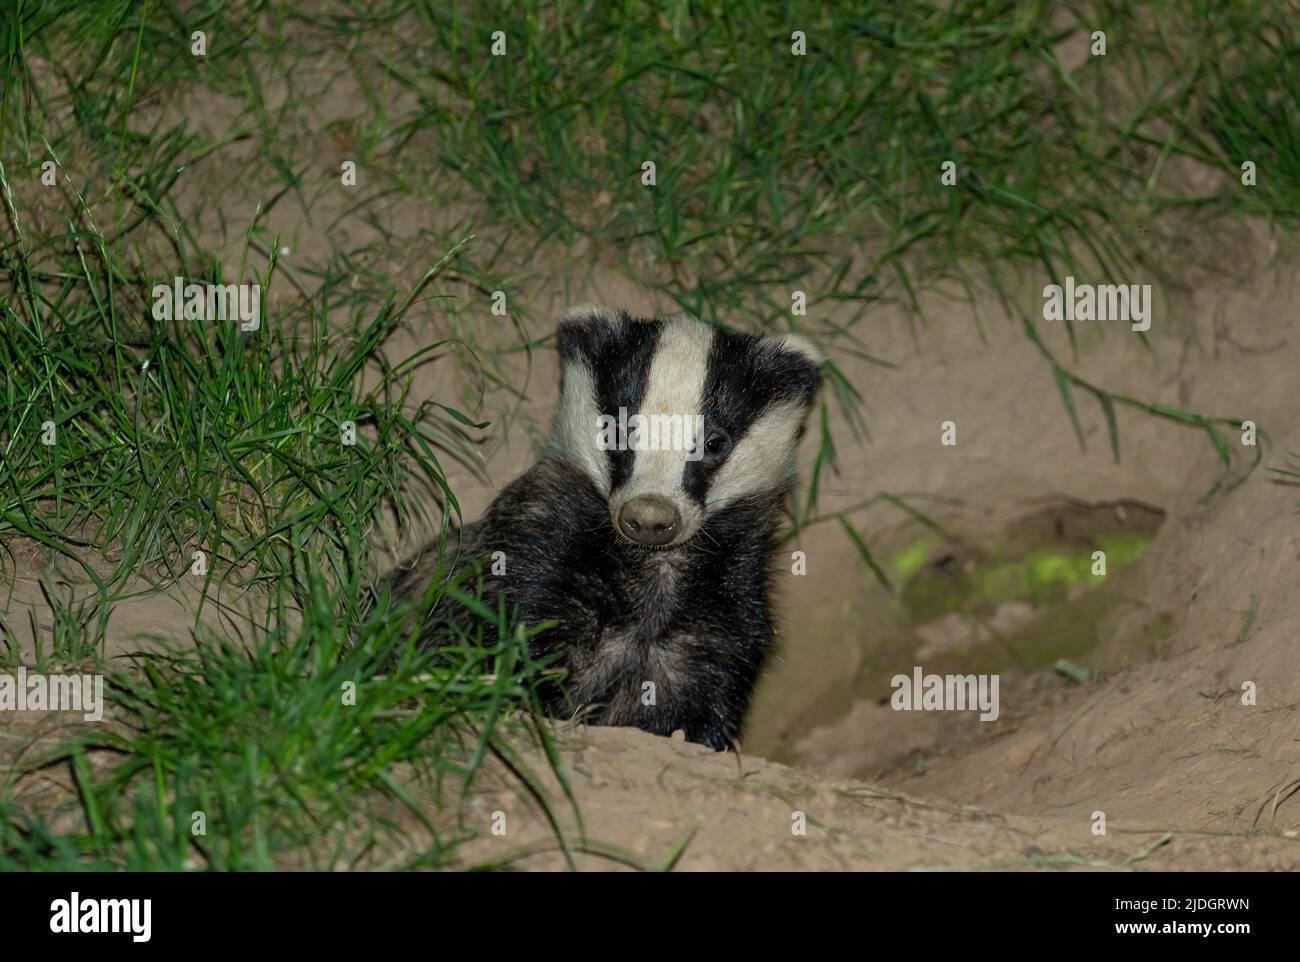 Badger, Nome scientifico: Meles Meles. Tasso selvatico e nativo in habitat naturale boschivo, lasciando il sett a metà estate. Rivolto in avanti. Primo piano. S Foto Stock